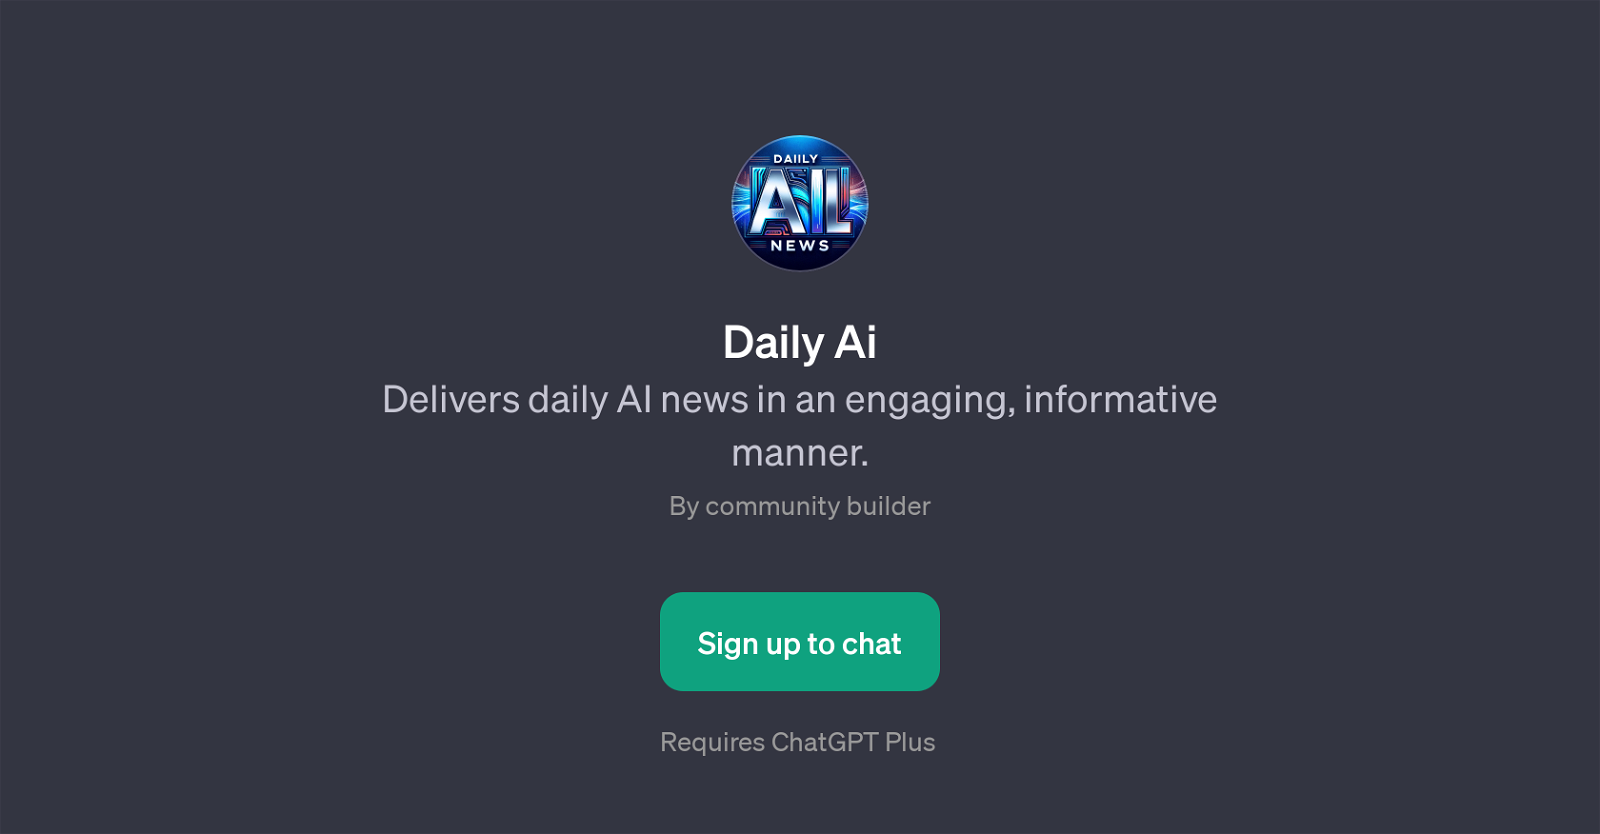 Daily Ai website